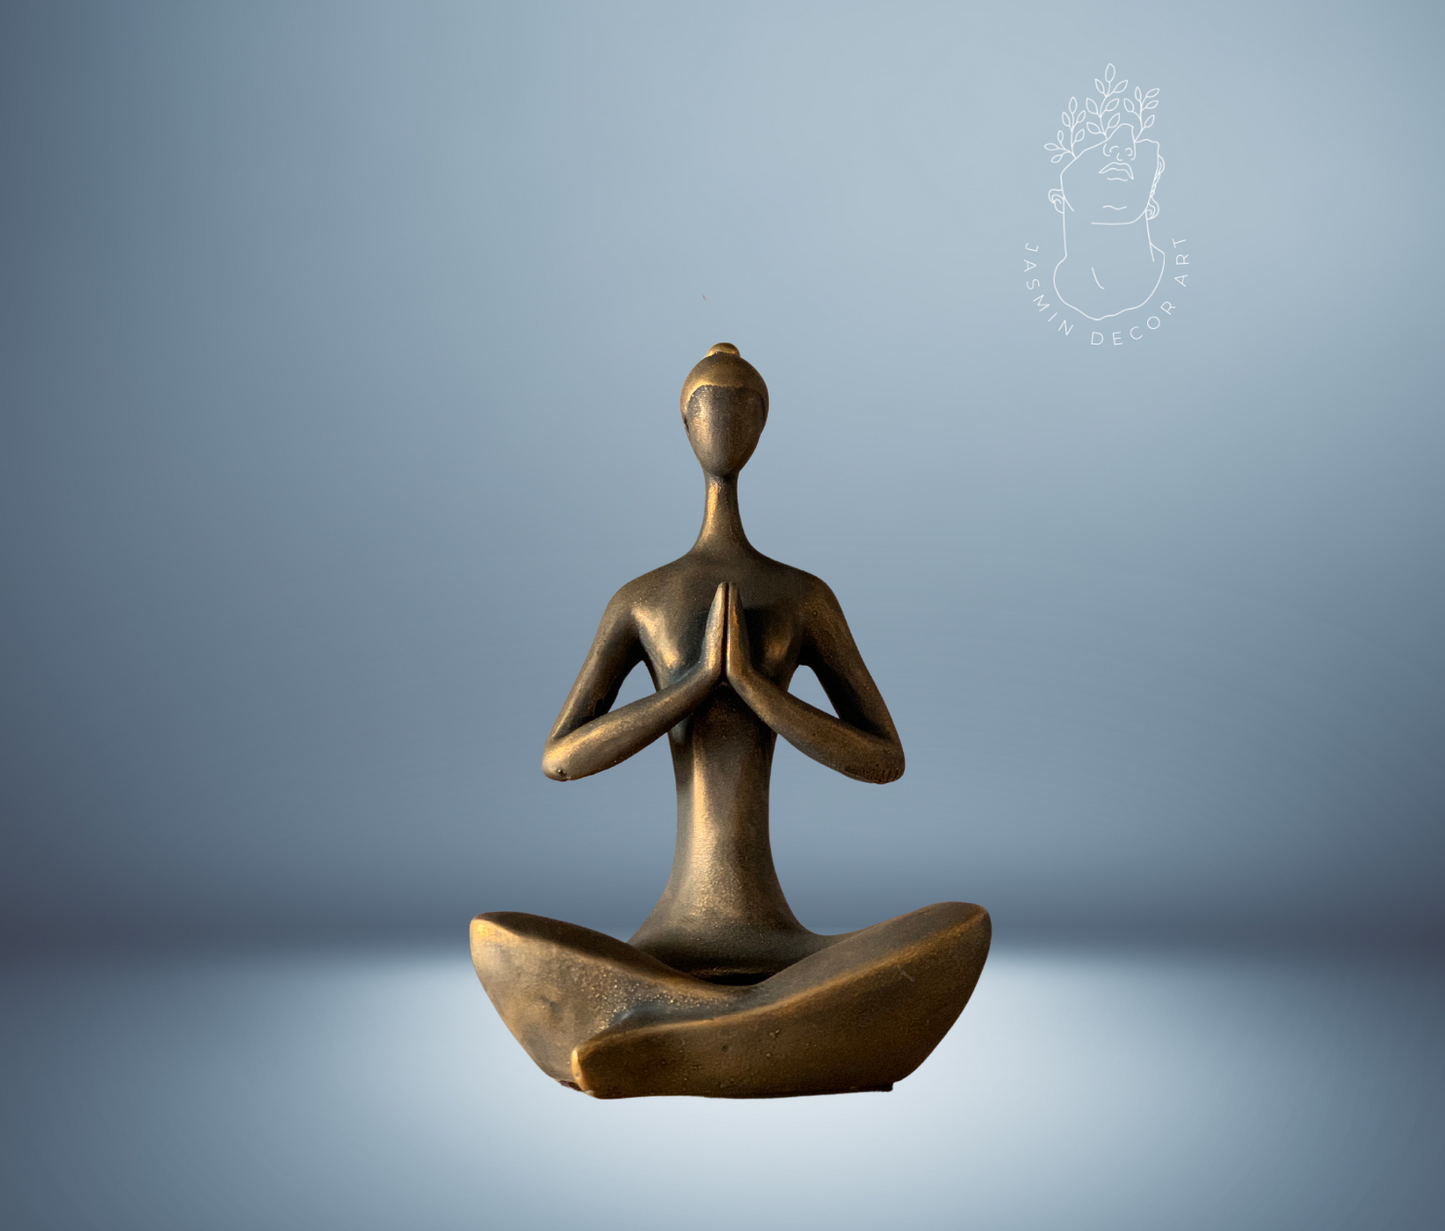 andmade Yoga Pose Candleholder in Namaste Pose